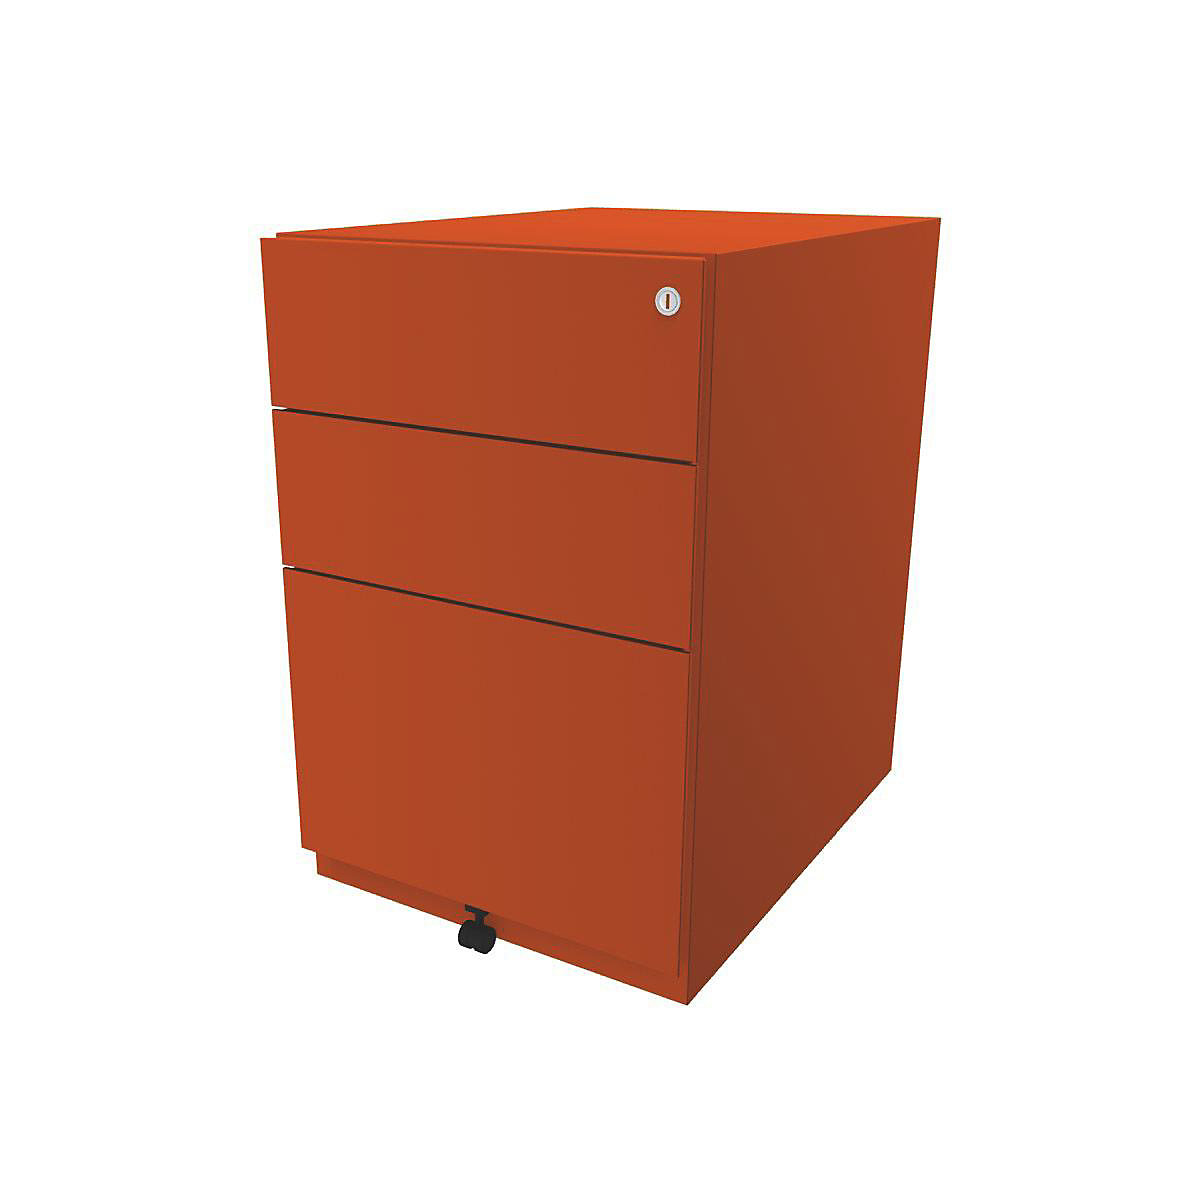 Pojízdný kontejner Note™, se 2 univerzálními zásuvkami, 1 kartotéka pro závěsné složky – BISLEY, v x š x h 645 x 420 x 565 mm, oranžová-1